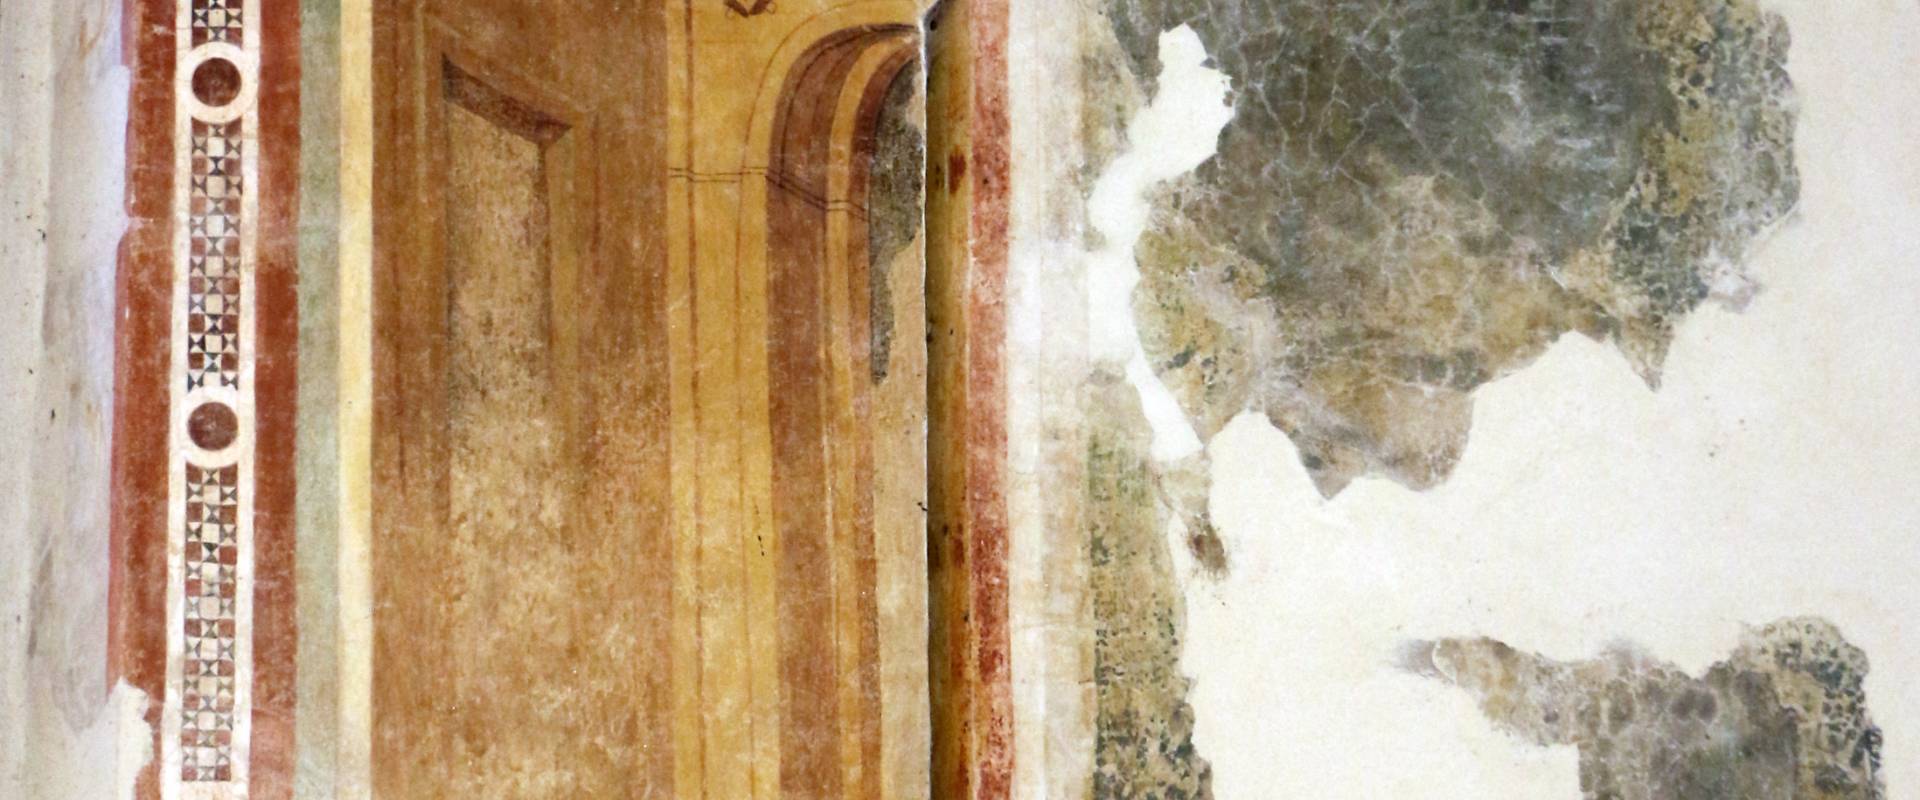 Pomposa, abbazia, refettorio, affreschi giotteschi riminesi del 1316-20, scranni 02 foto di Sailko